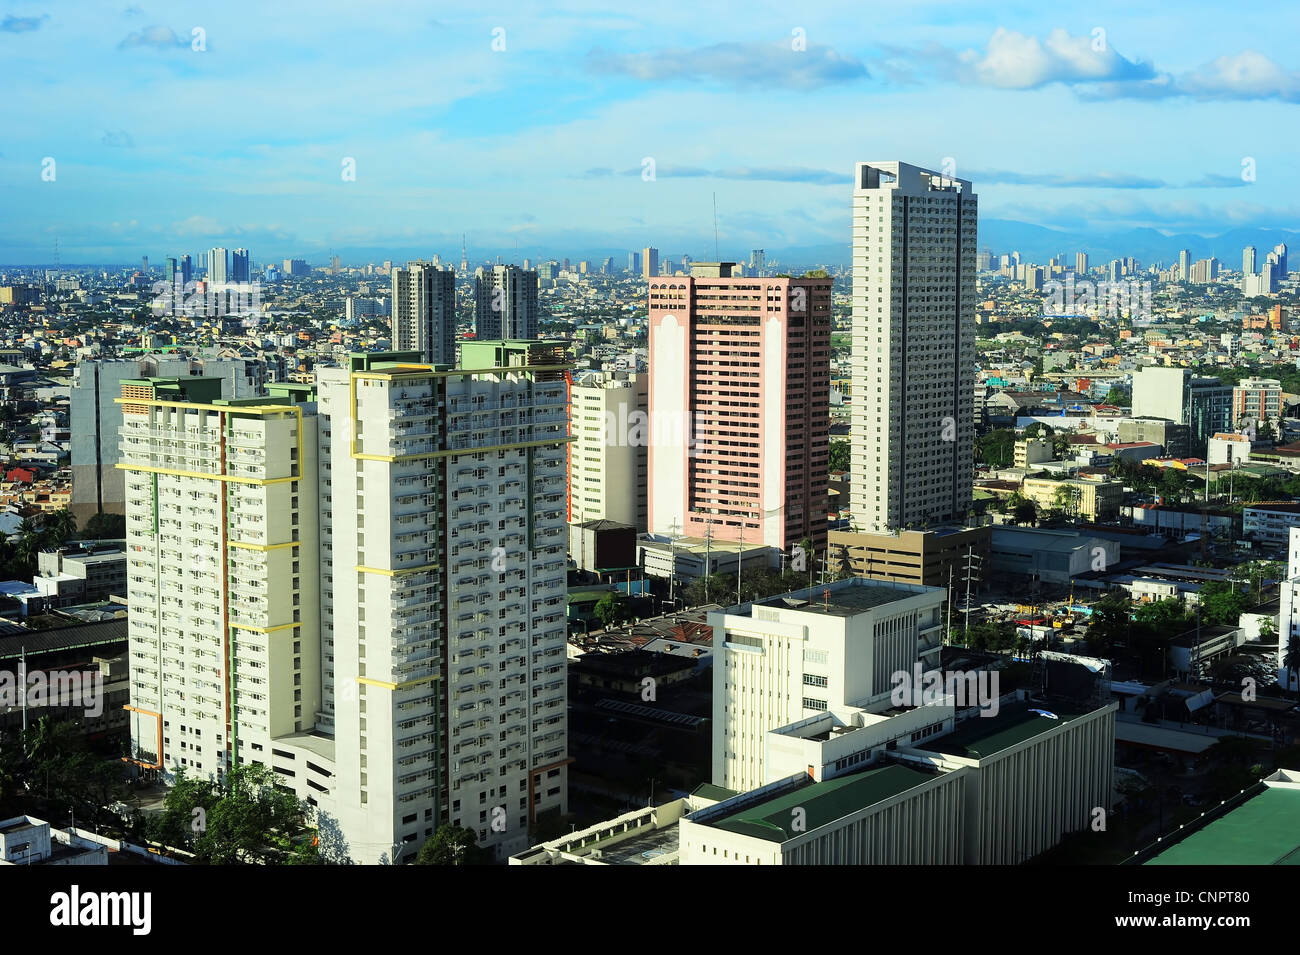 Vue aérienne sur Makati - moderne des affaires et des finances de la ville de Manille, Philippines Banque D'Images